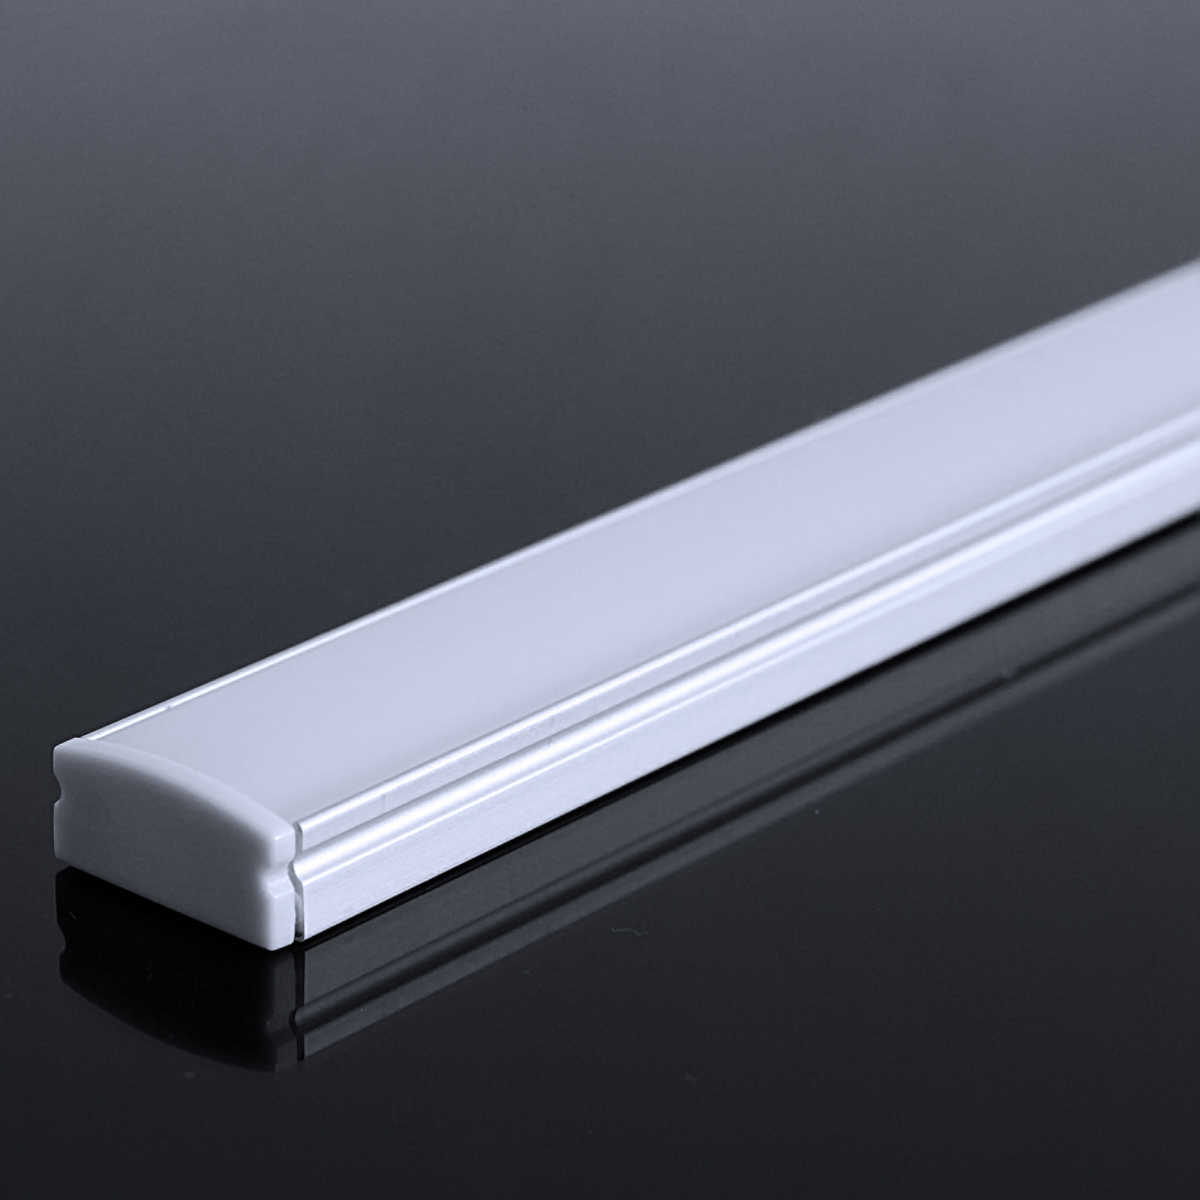 LED Flachprofil "Slim-Line" | Abdeckung diffus | Zuschnitt auf 117cm |